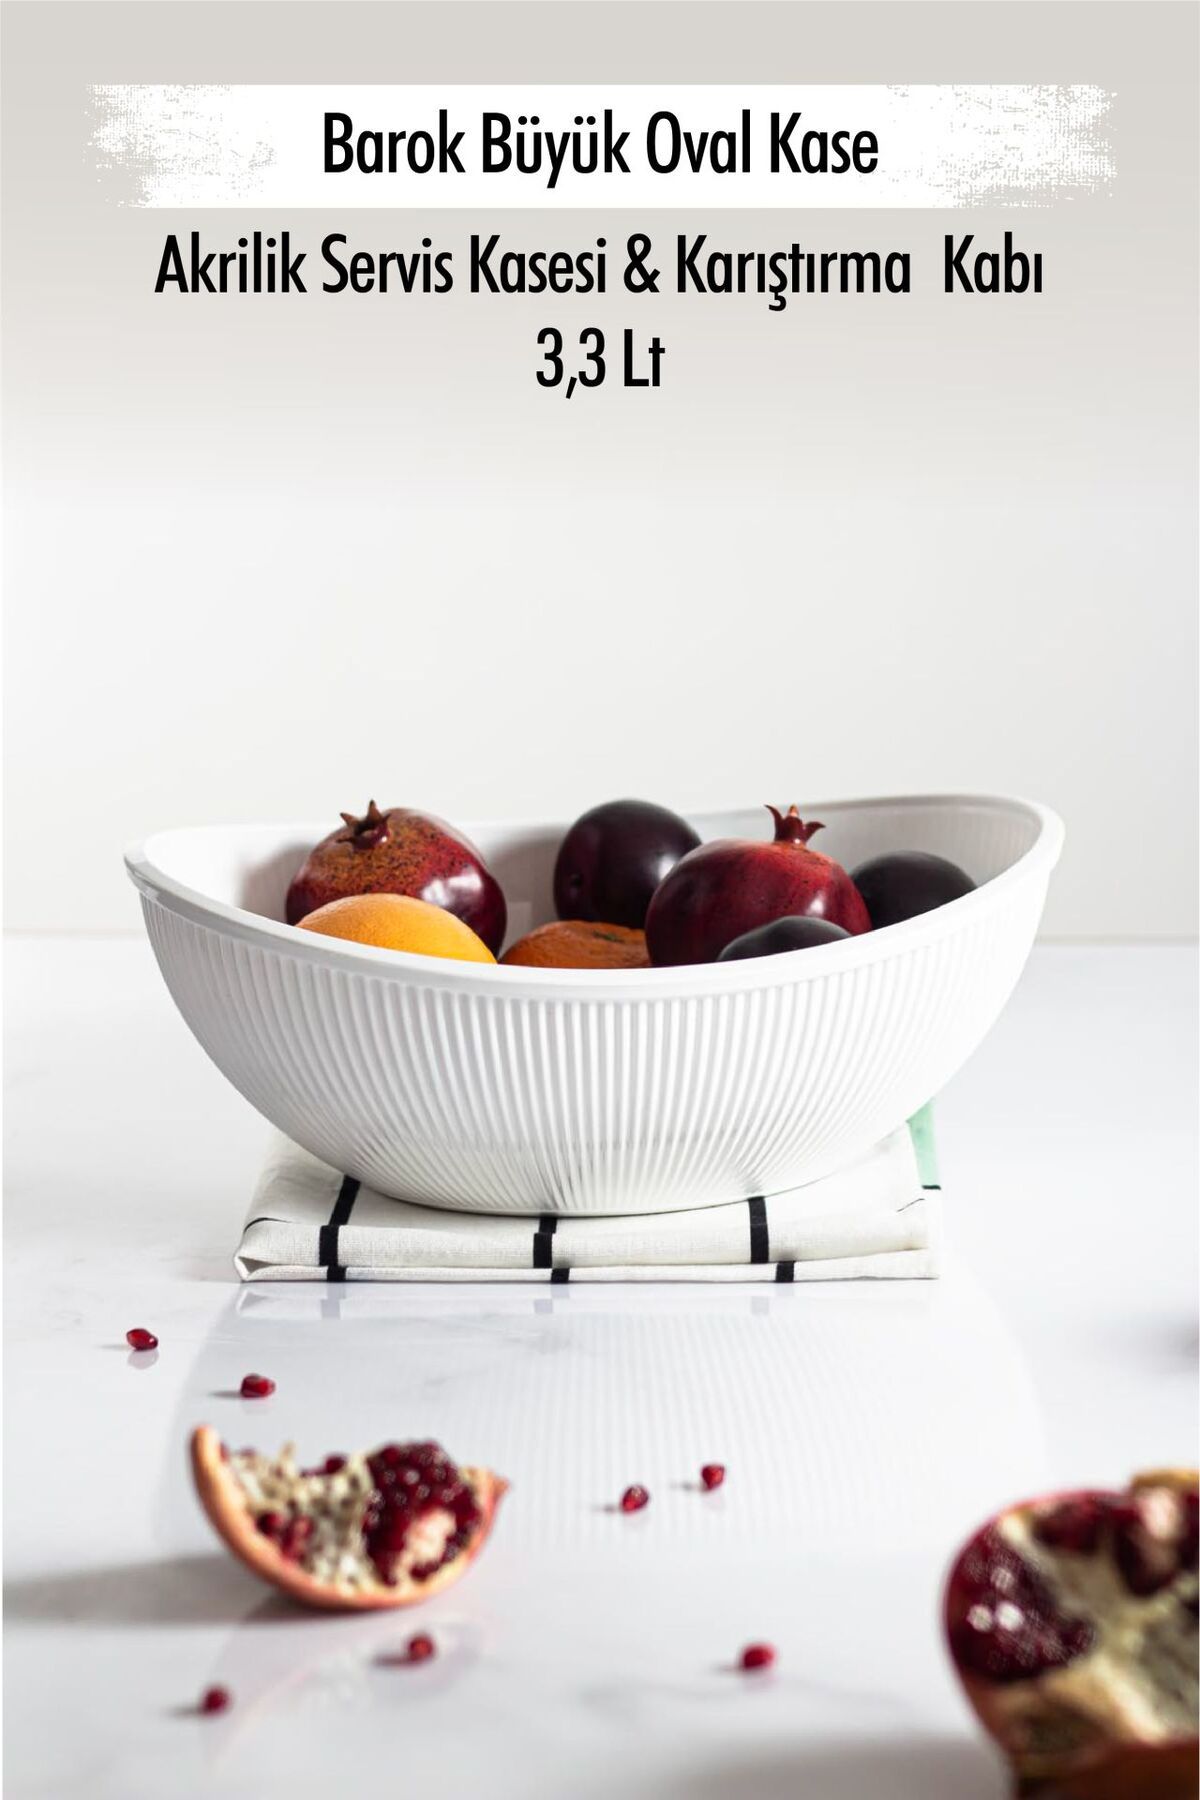 Genel Markalar Akrilik Barok Beyaz Büyük Oval Meyve & Salata Kasesi & Karıştırma Kabı / 3,3 Lt  (CAM DEĞİLDİR)